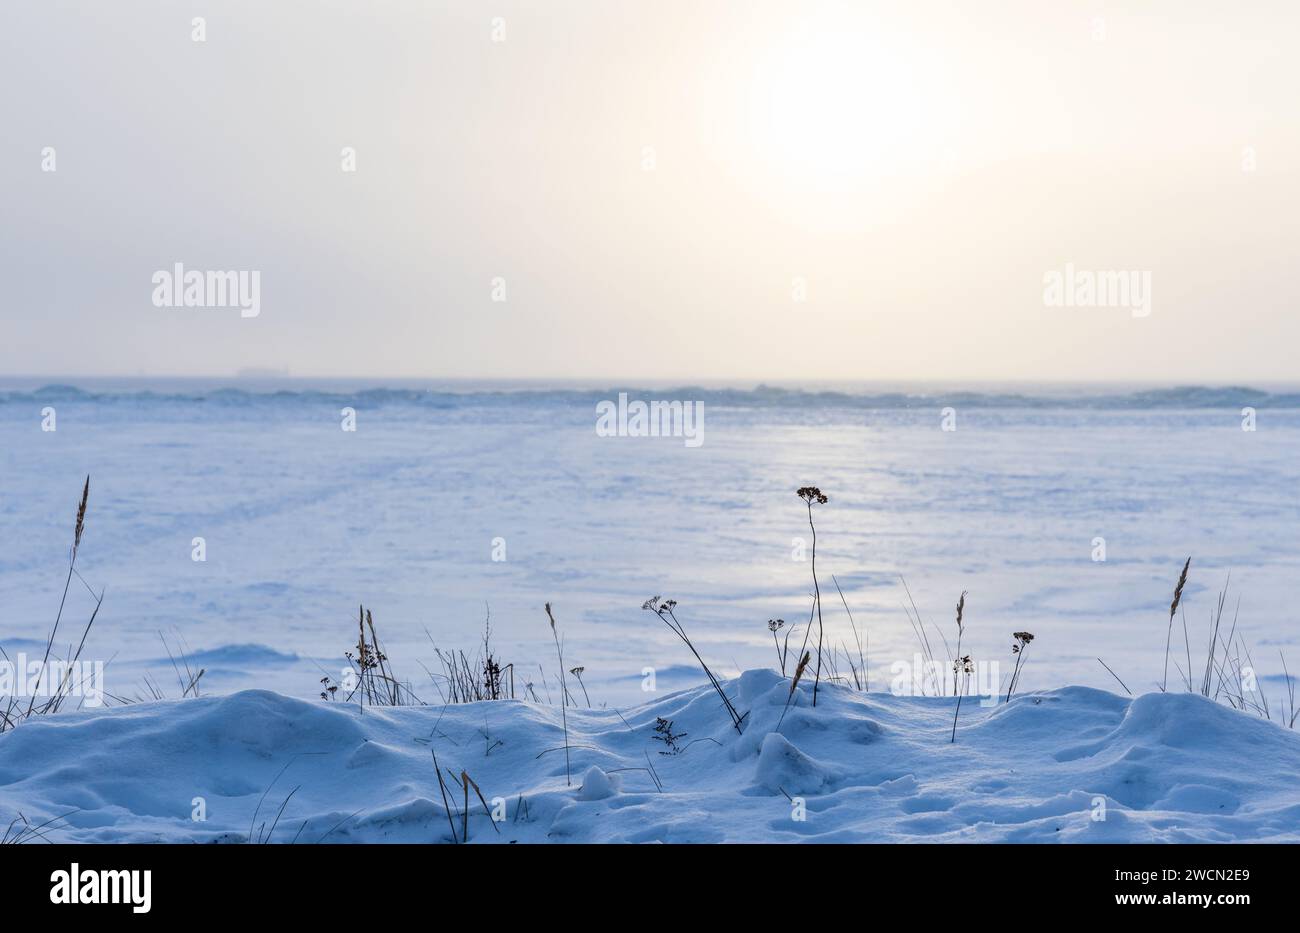 Paysage d'hiver avec des fleurs sèches dans une dérive de neige sur une journée ensoleillée, photo de fond naturelle prise sur la côte de la mer Baltique gelée Banque D'Images